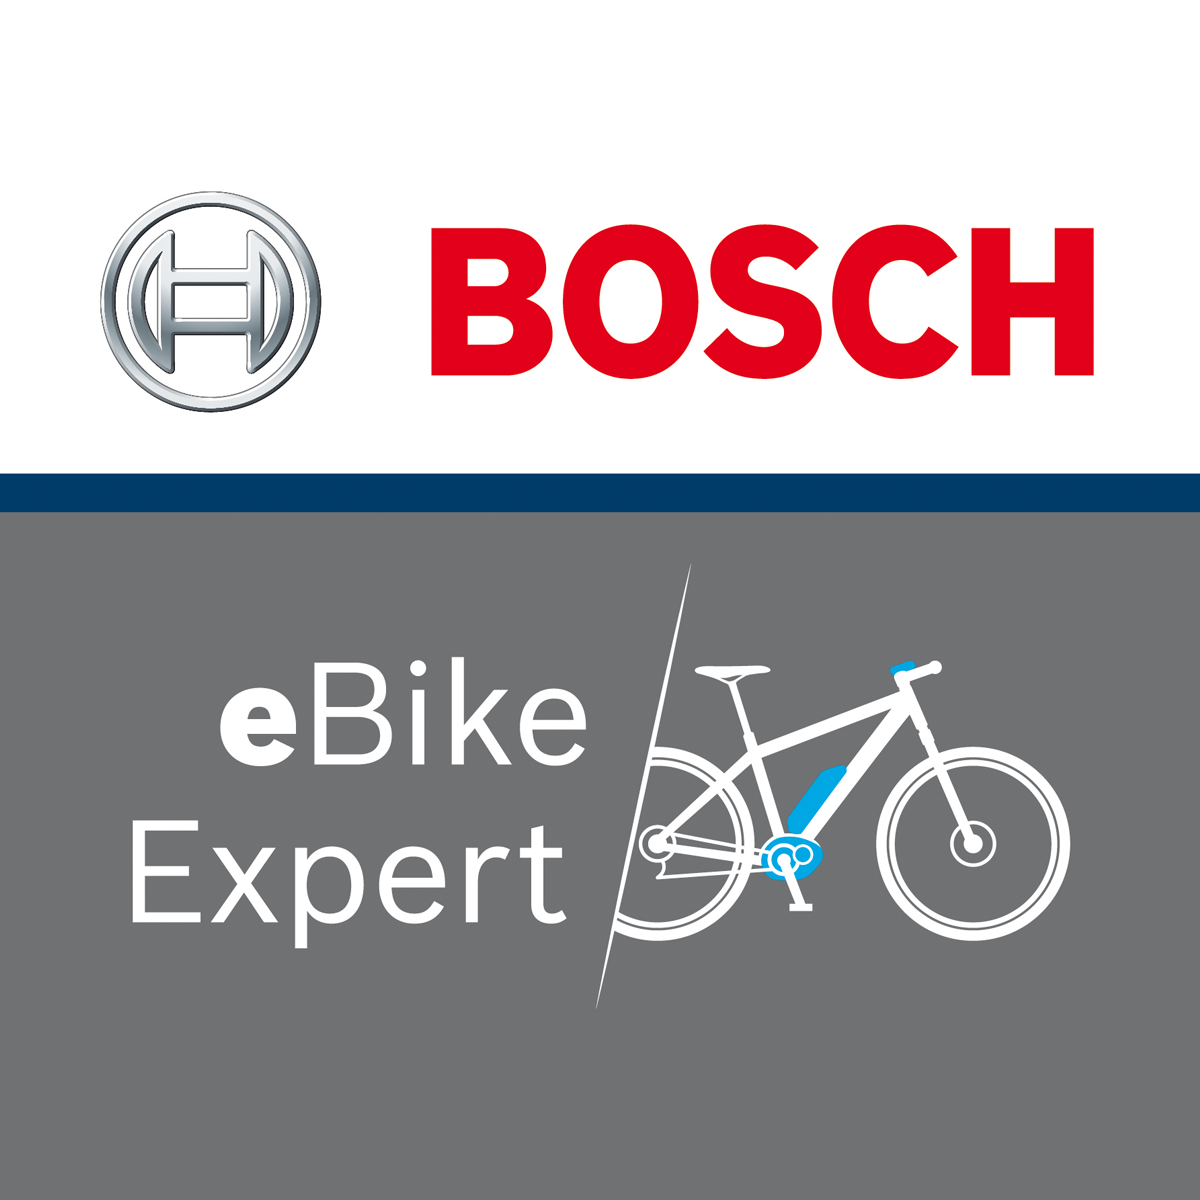 Technicien certifié Bosch eBike